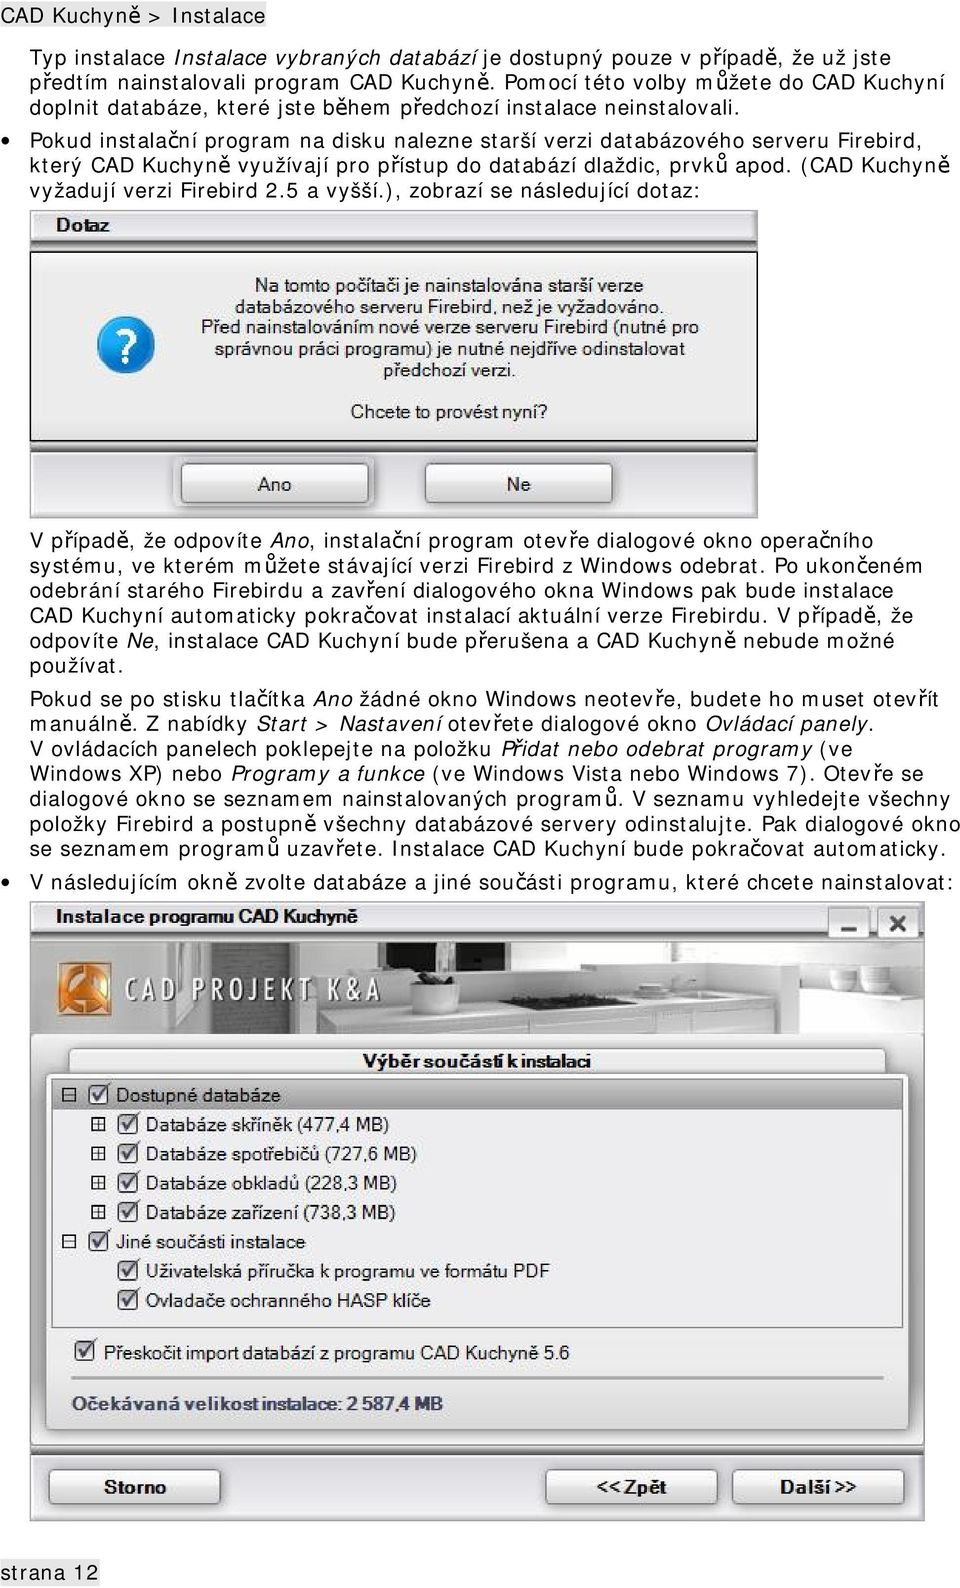 Pokud instalační program na disku nalezne starší verzi databázového serveru Firebird, který CAD Kuchyně využívají pro přístup do databází dlaždic, prvků apod. (CAD Kuchyně vyžadují verzi Firebird 2.